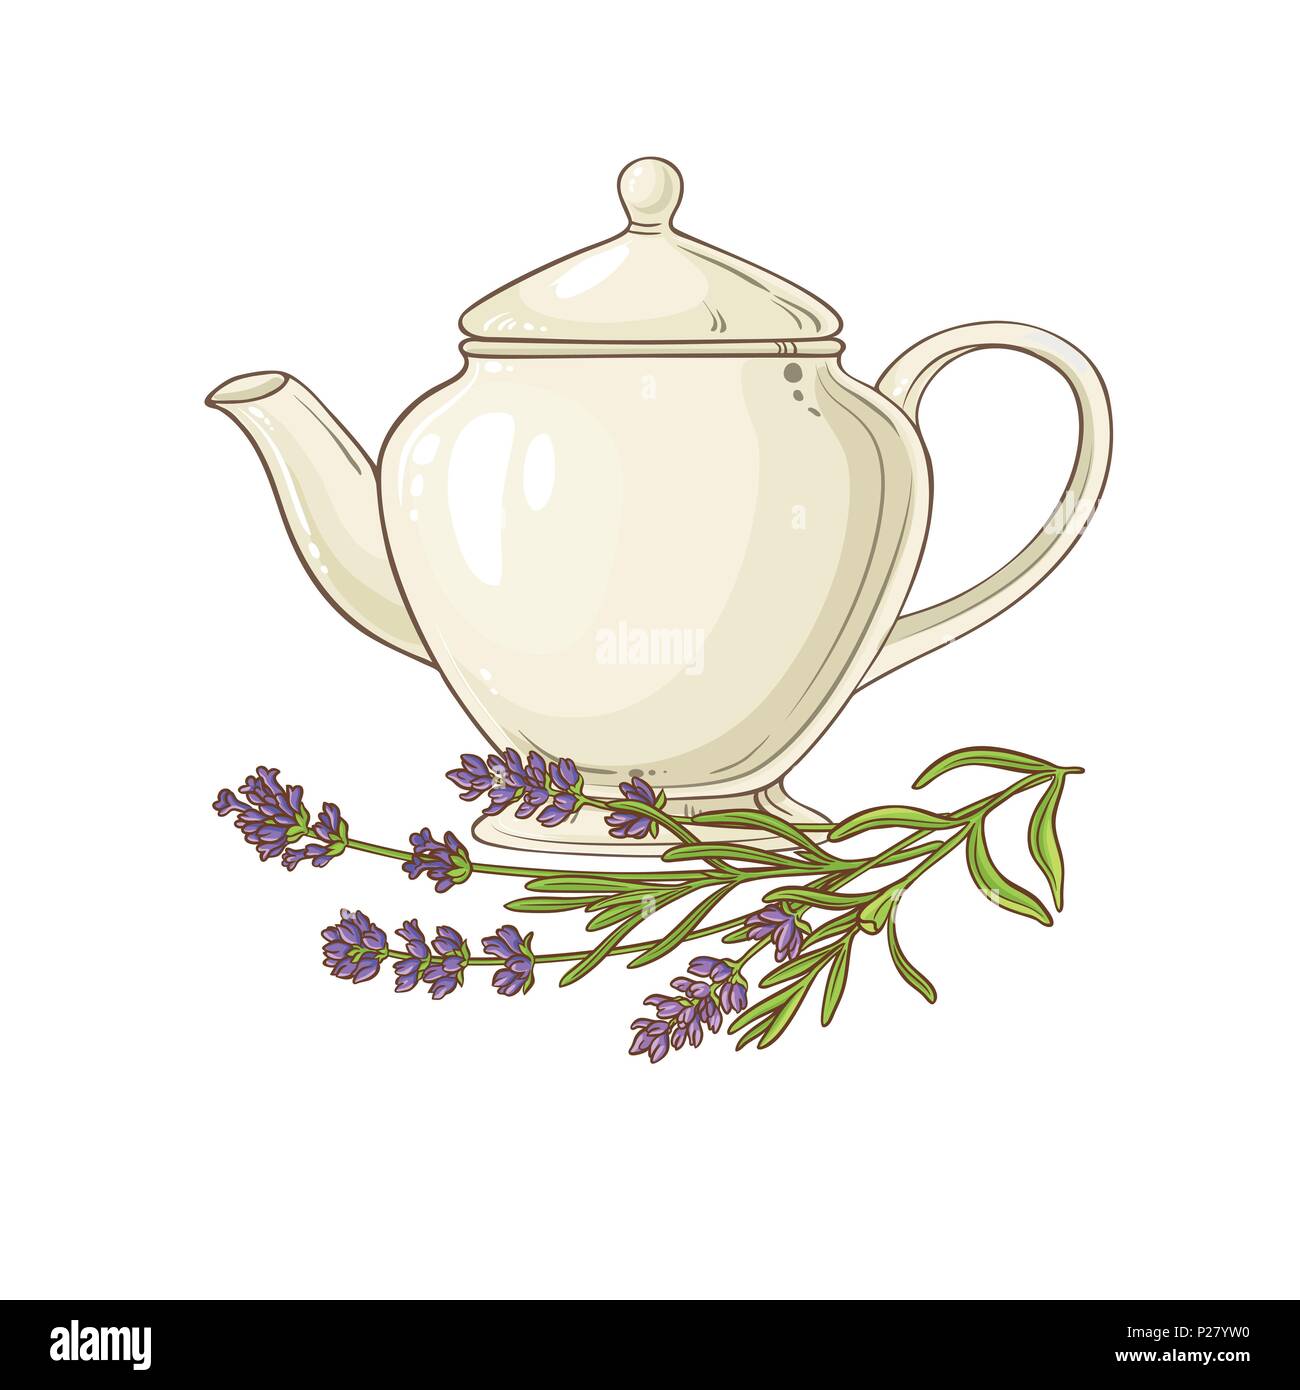 lavender tea in teapot illustration on white background Stock Vector